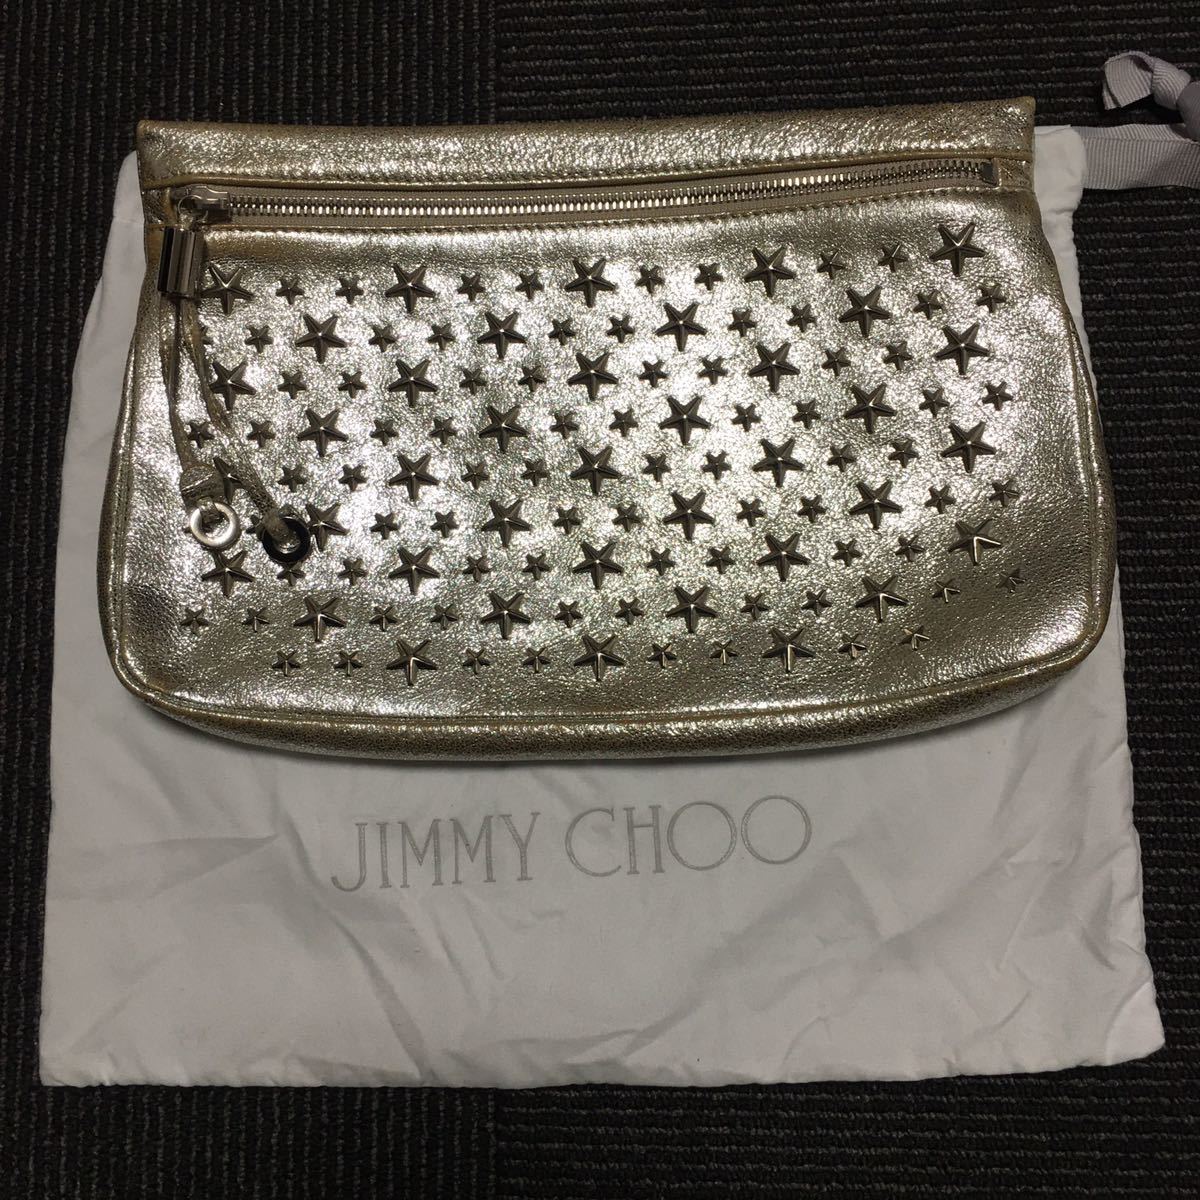 【ジミーチュウ】本物 JIMMY CHOO クラッチバッグ スタッズ セカンドバッグ ゼナ シルバー色 レザー フィリッパ メンズ レディース 保存袋